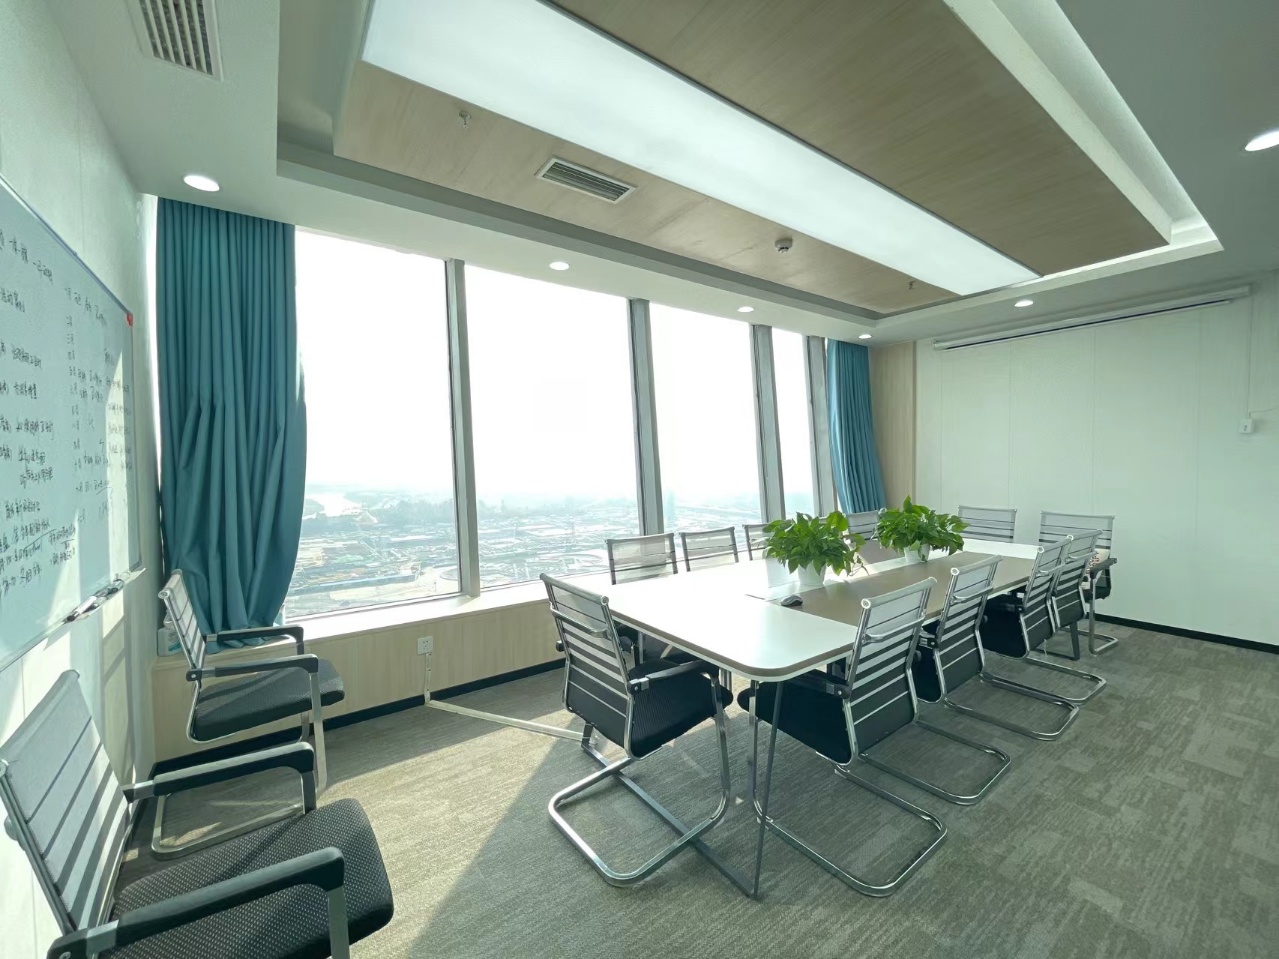 高新区新世纪环球中心精装小面积办公室 简约艺术风格 含物业和空调费